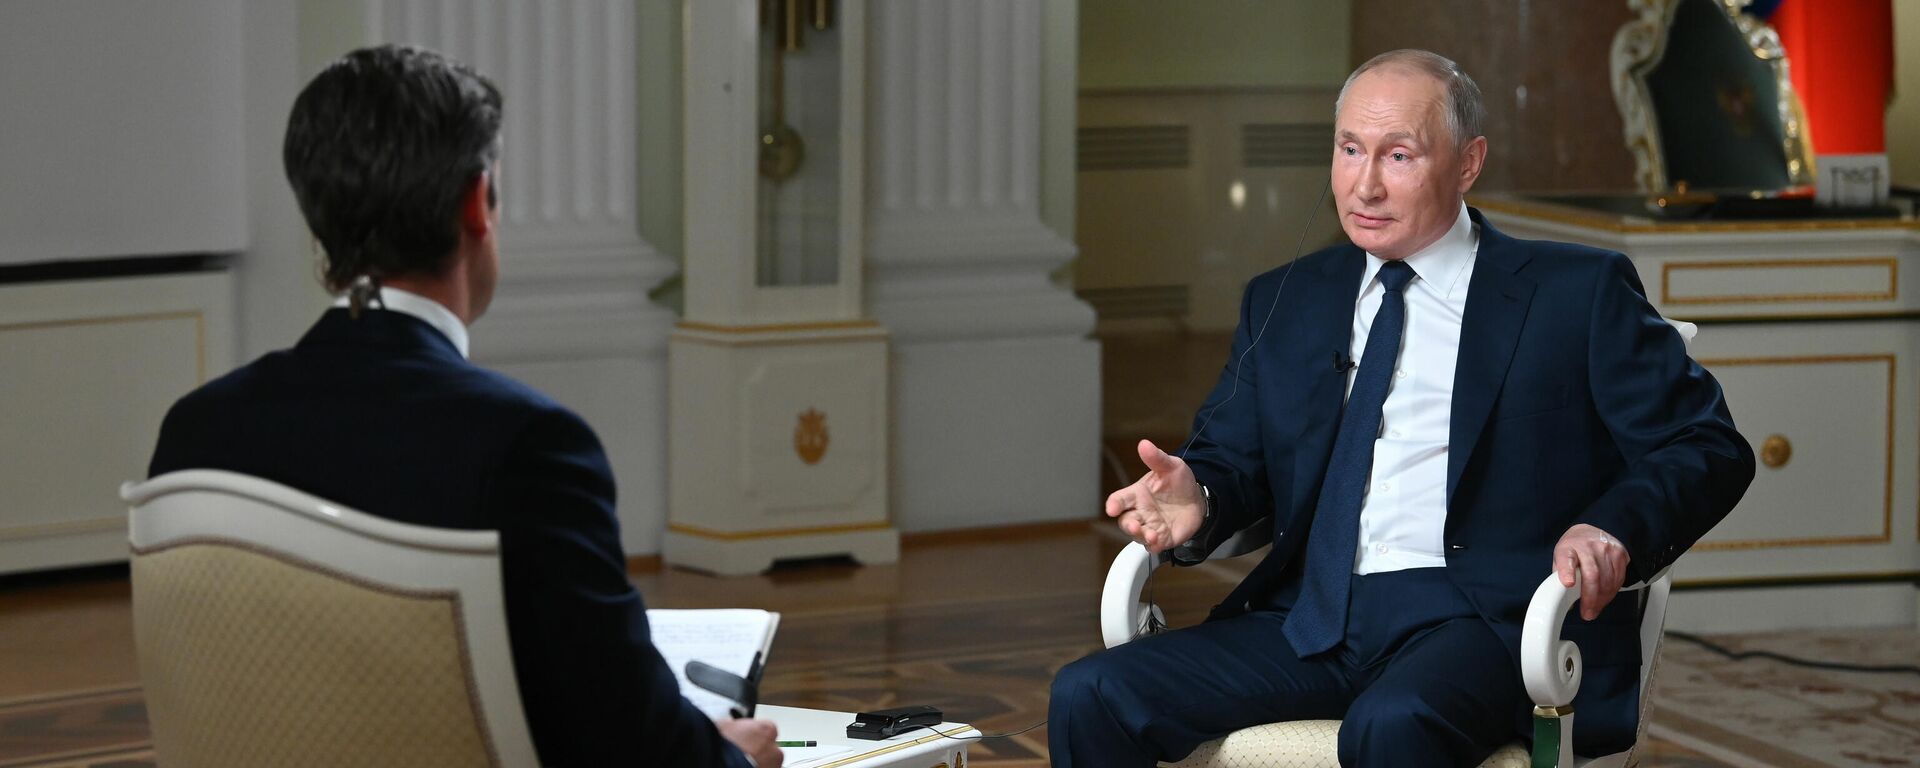 Президент РФ В. Путин дал интервью американской телекомпании NBC - Sputnik Ўзбекистон, 1920, 15.06.2021